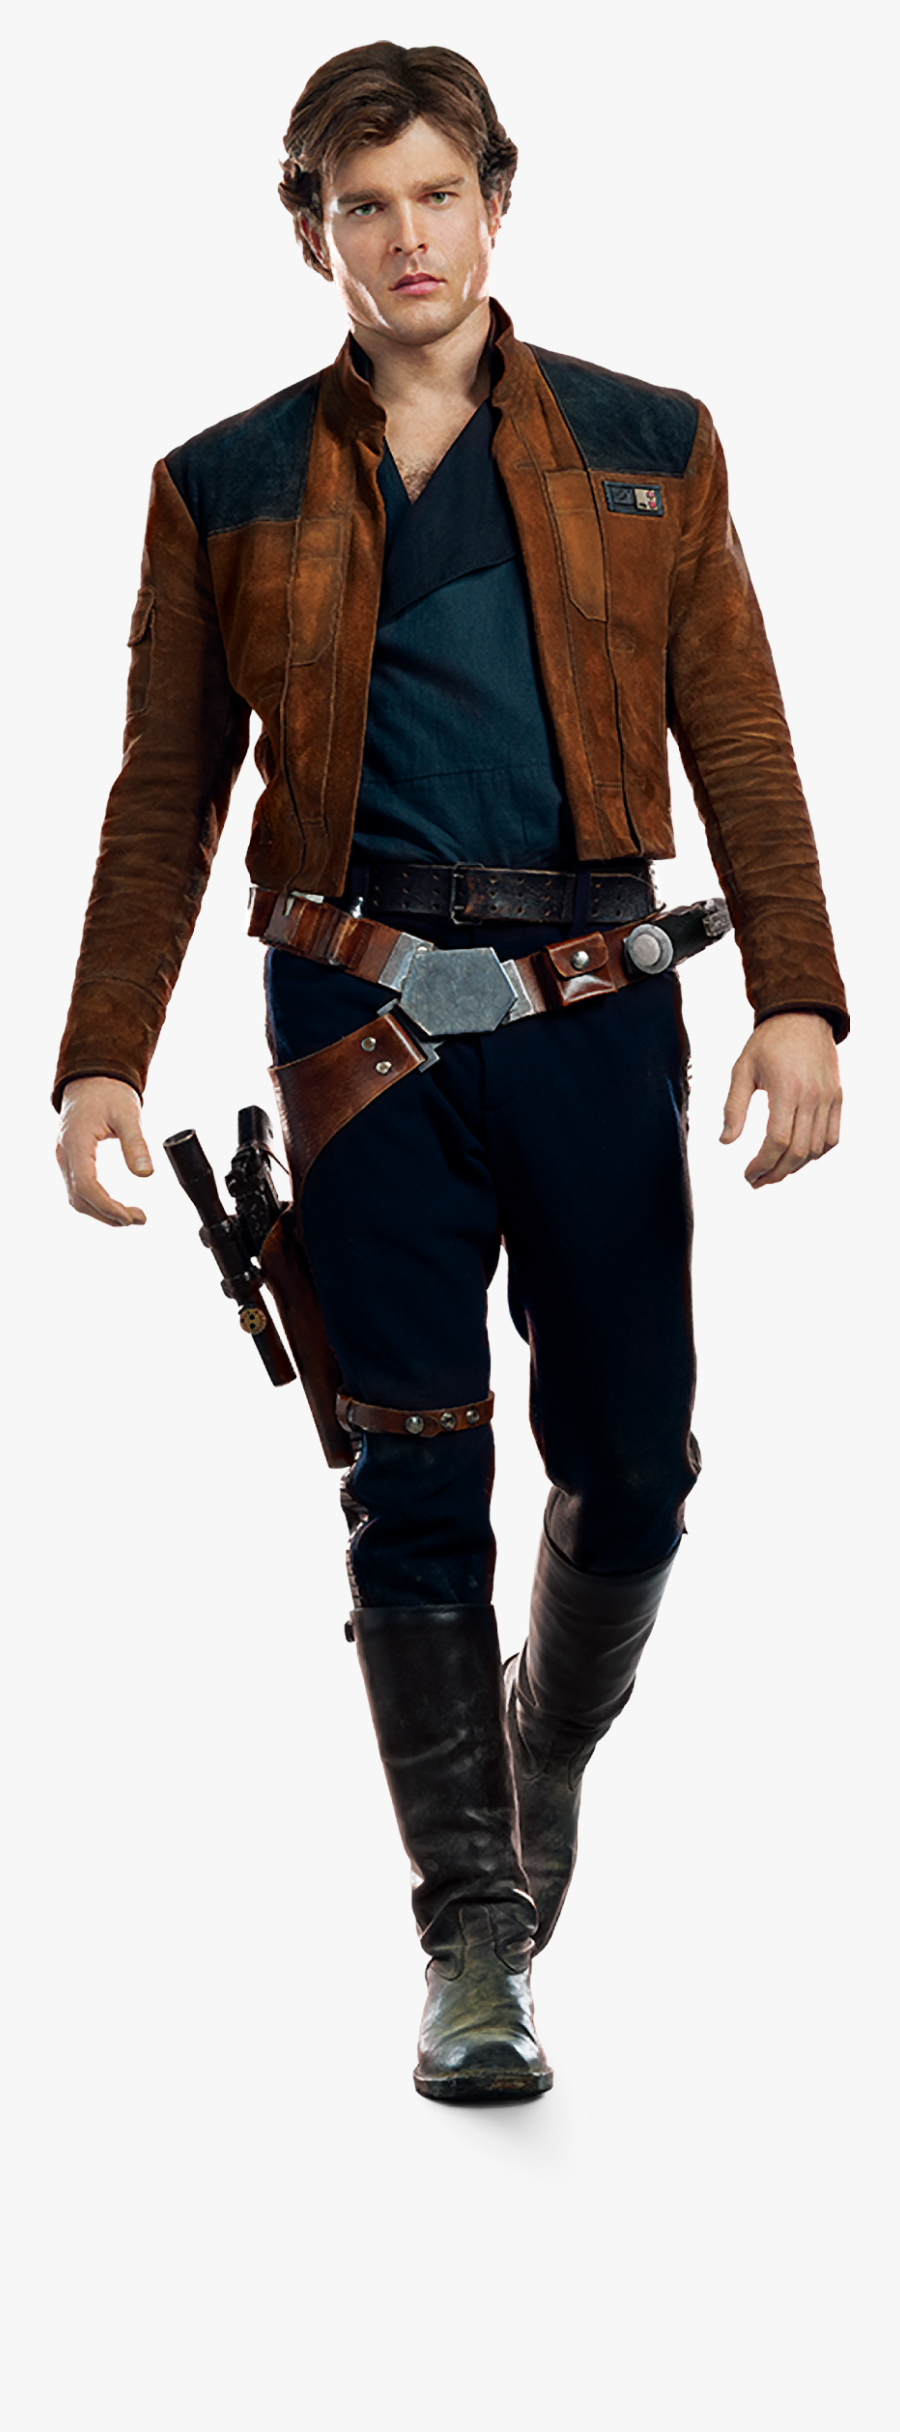 Transparent Hans Solo Clipart - Han Solo Outfit, Transparent Clipart